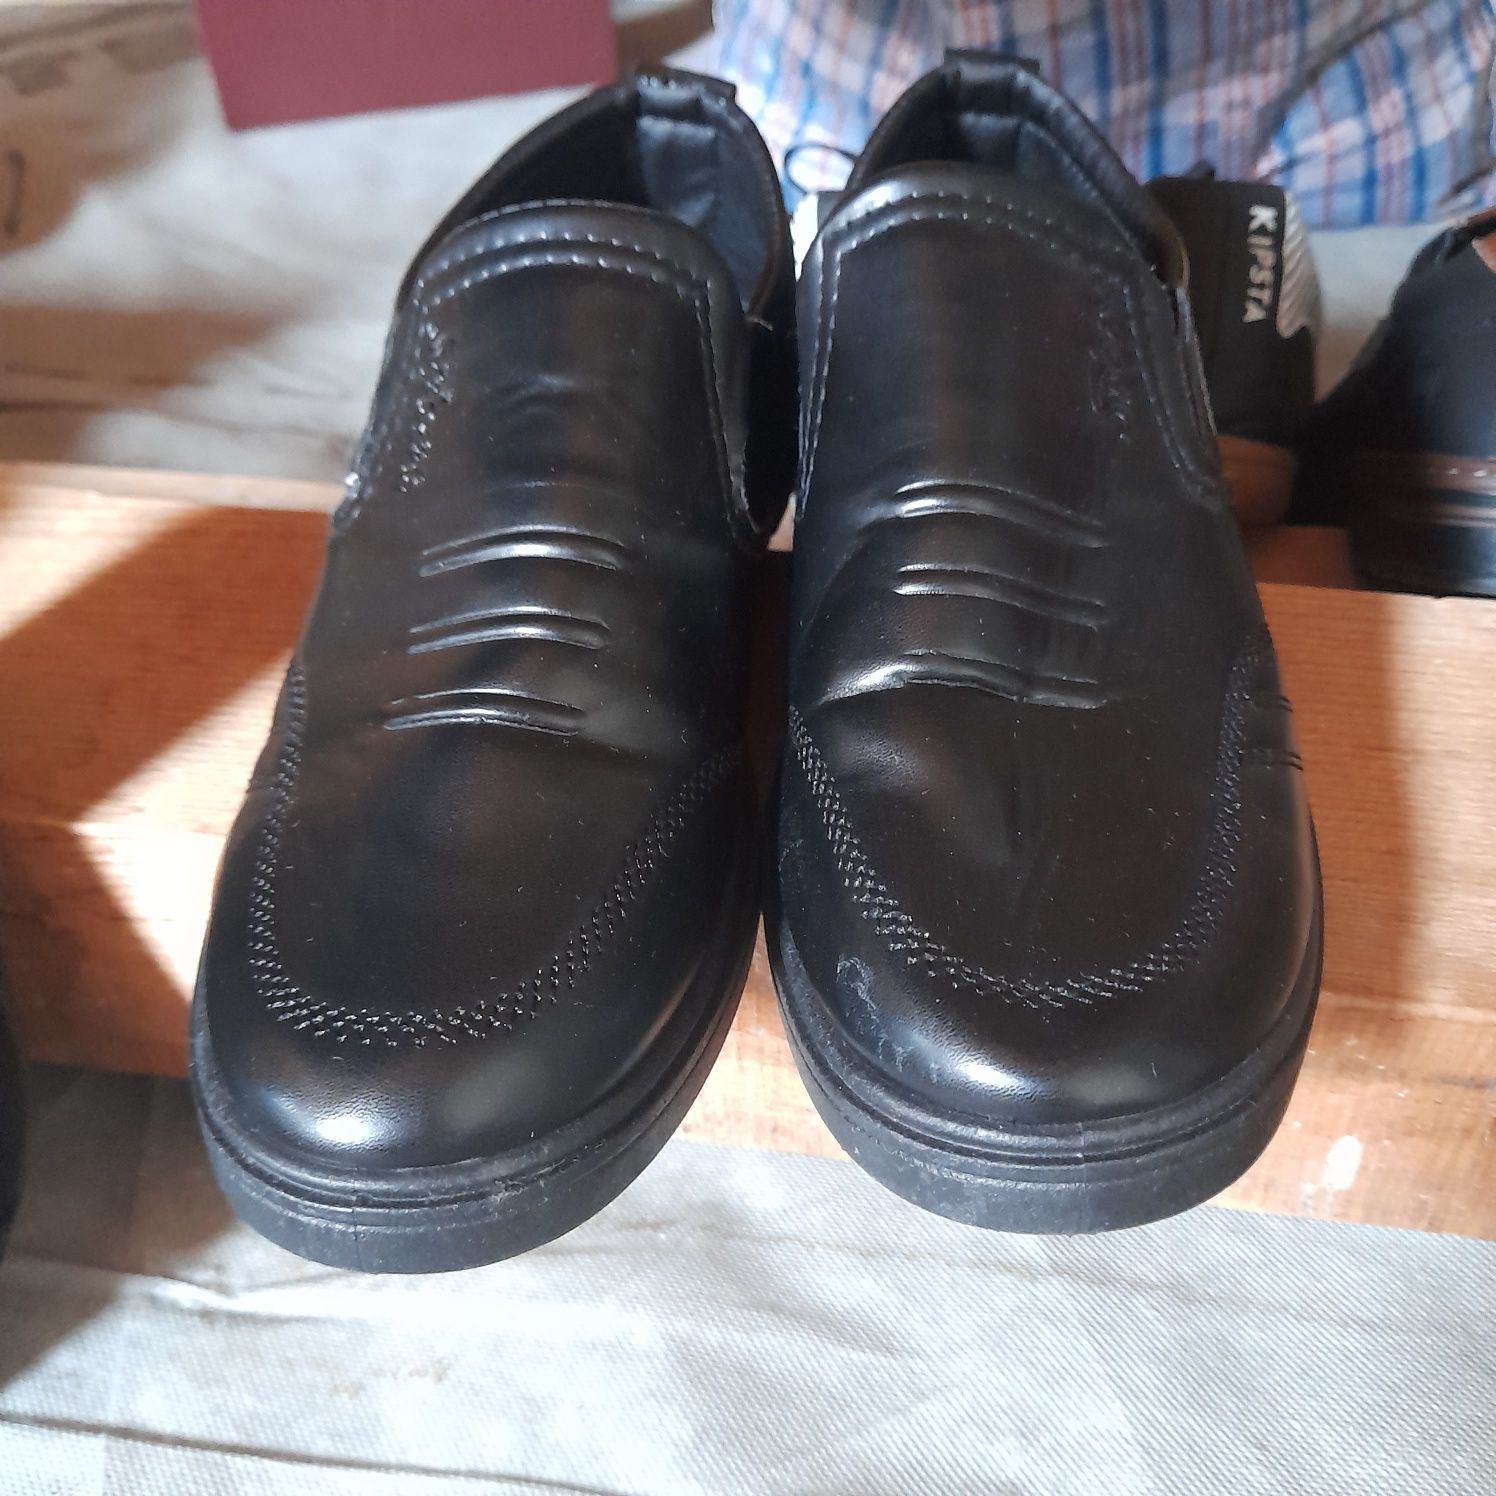 Vând pantofi de gală bărbați
„Samus GuitArt” - Satu Mare - 2o24
Ediția